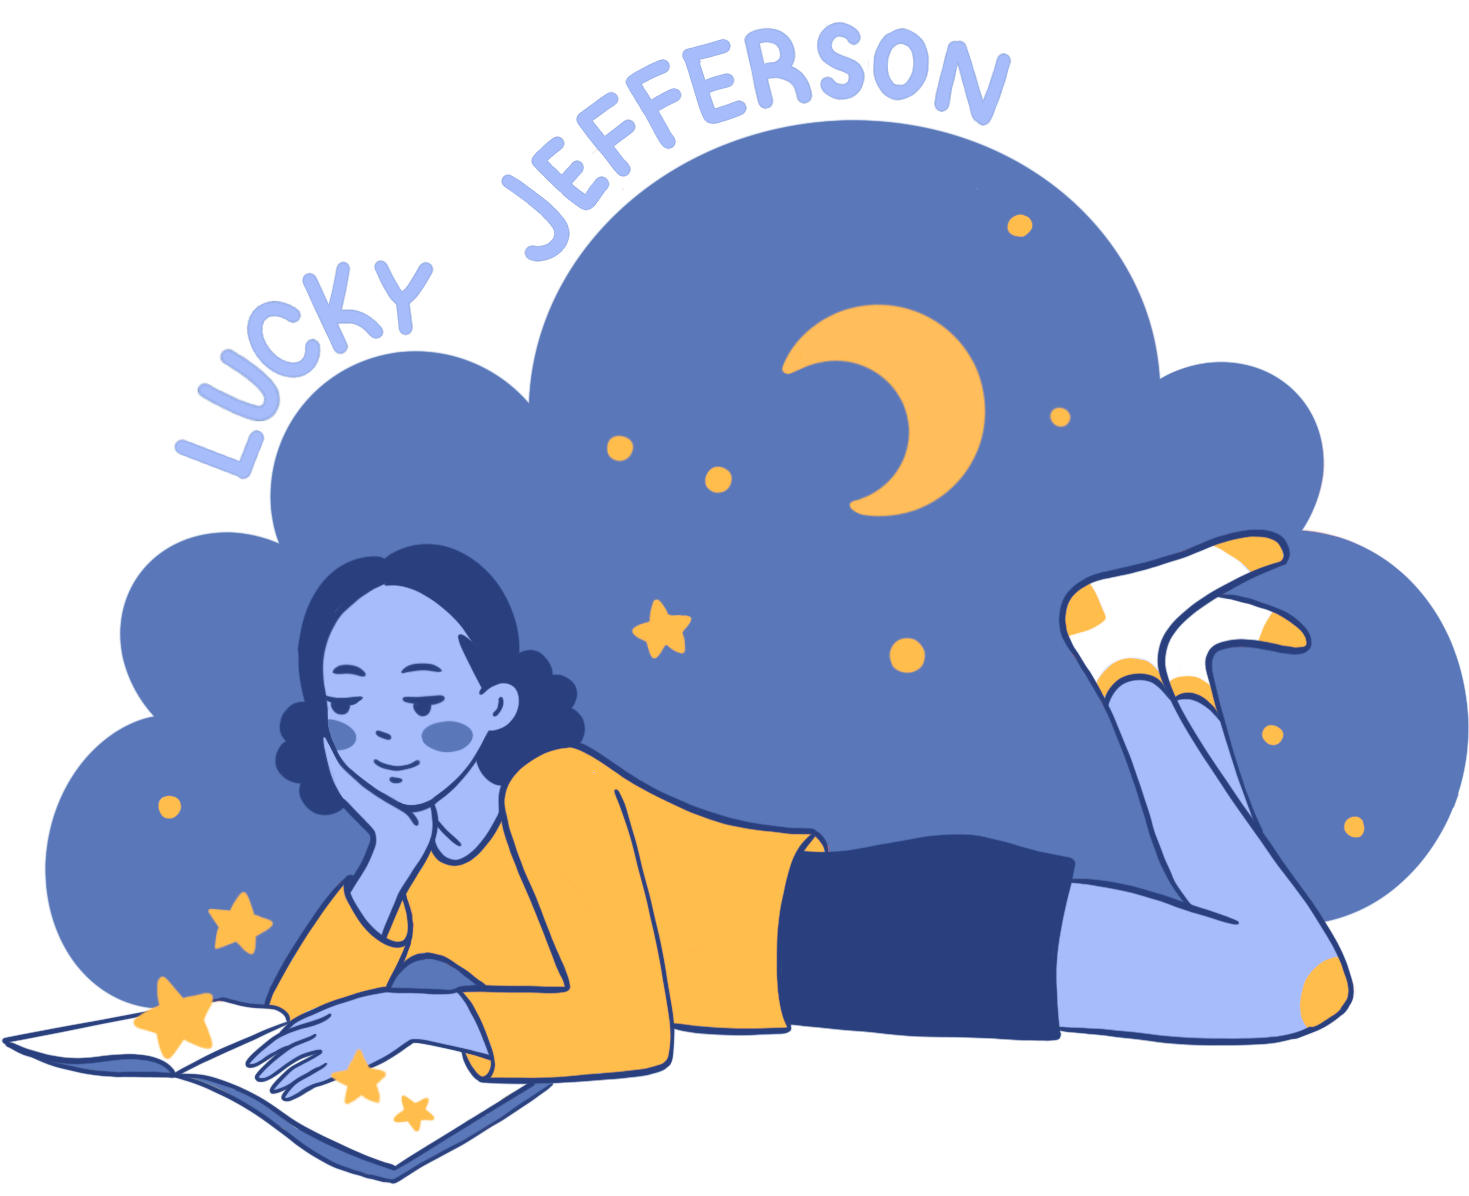 Lucky Jefferson logo